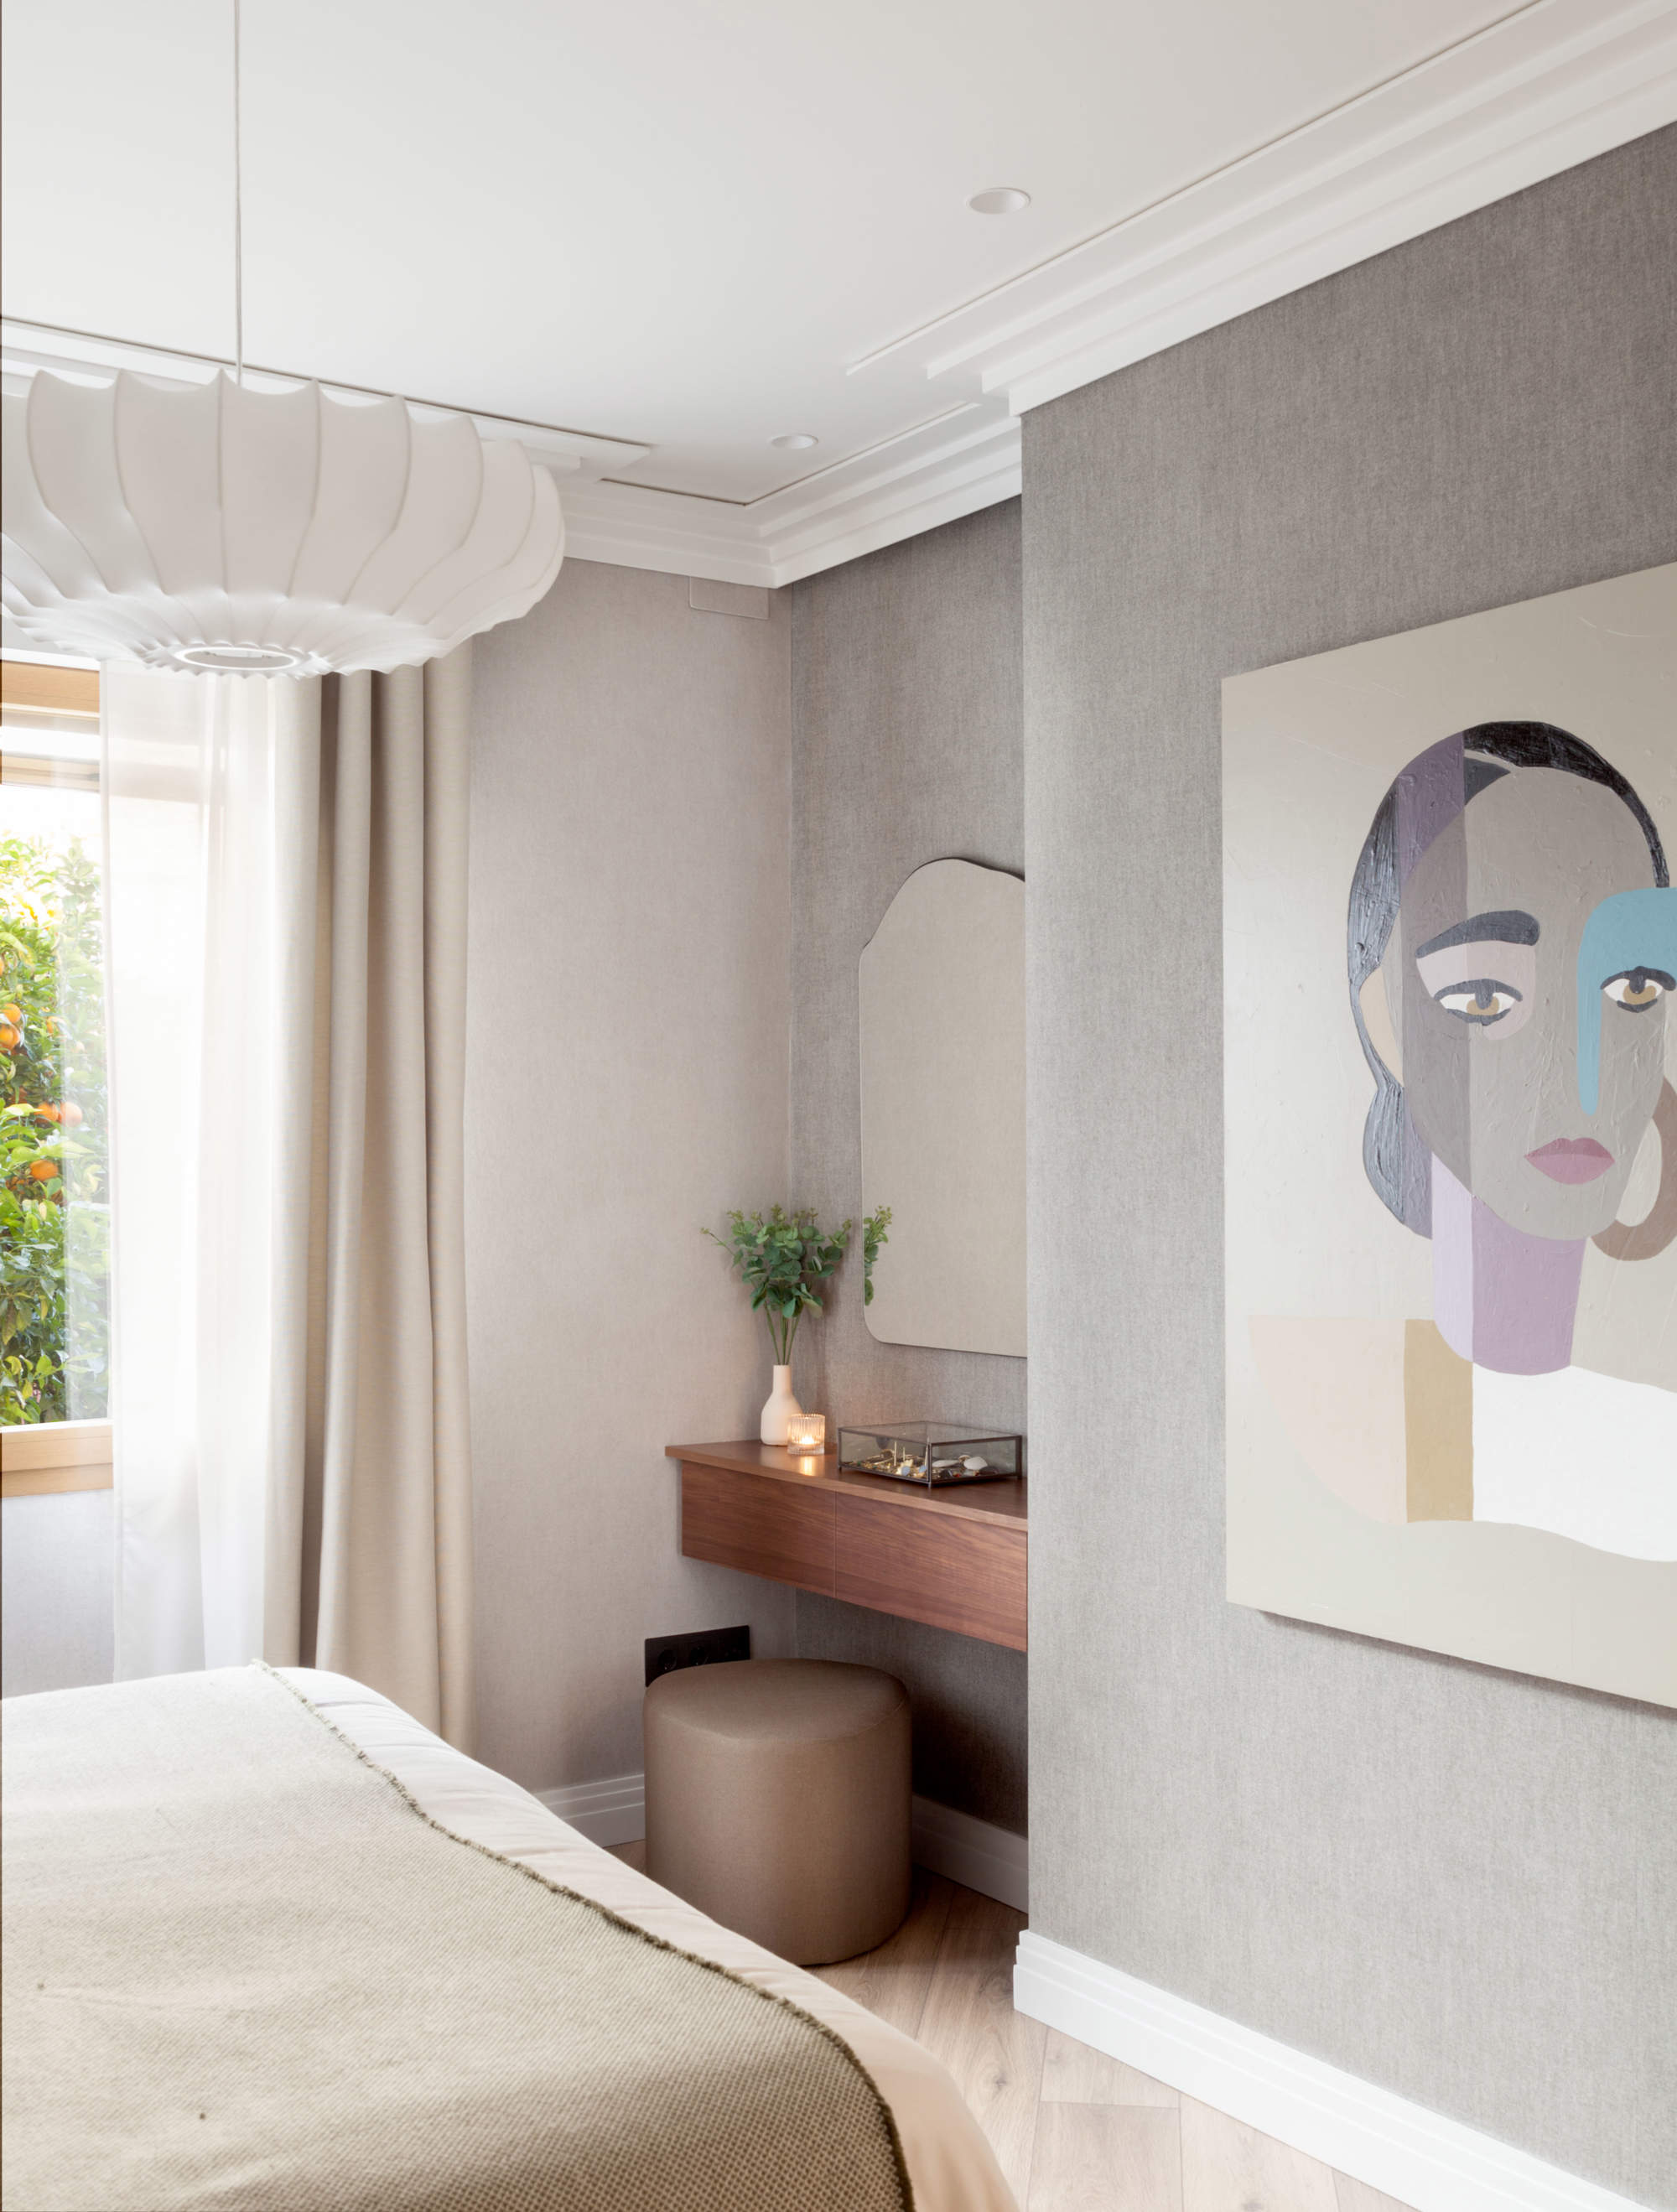 Dormitorio con tocador volado y cuadro en pared a los pies de la cama, proyecto de Rober Quiñones-Her.